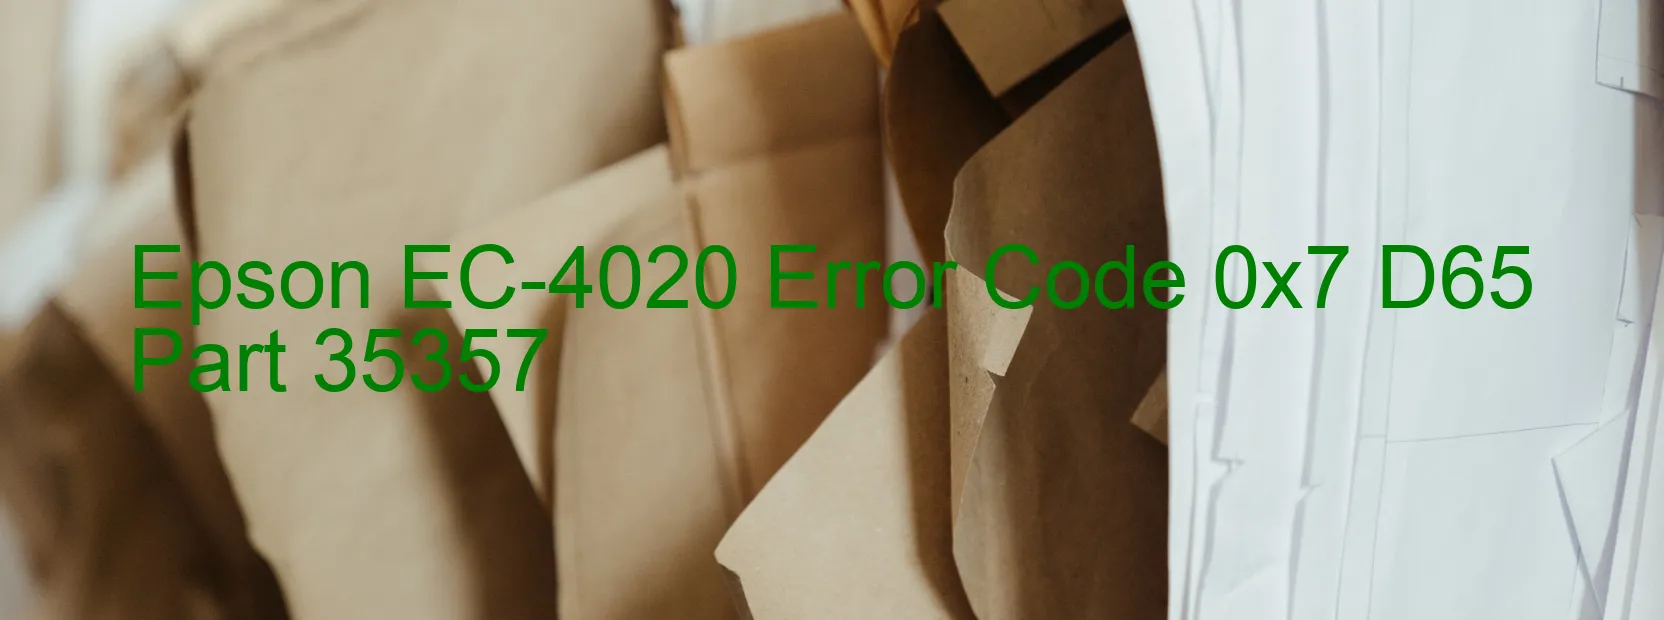 Epson EC-4020 Codice di errore 0x7 D65